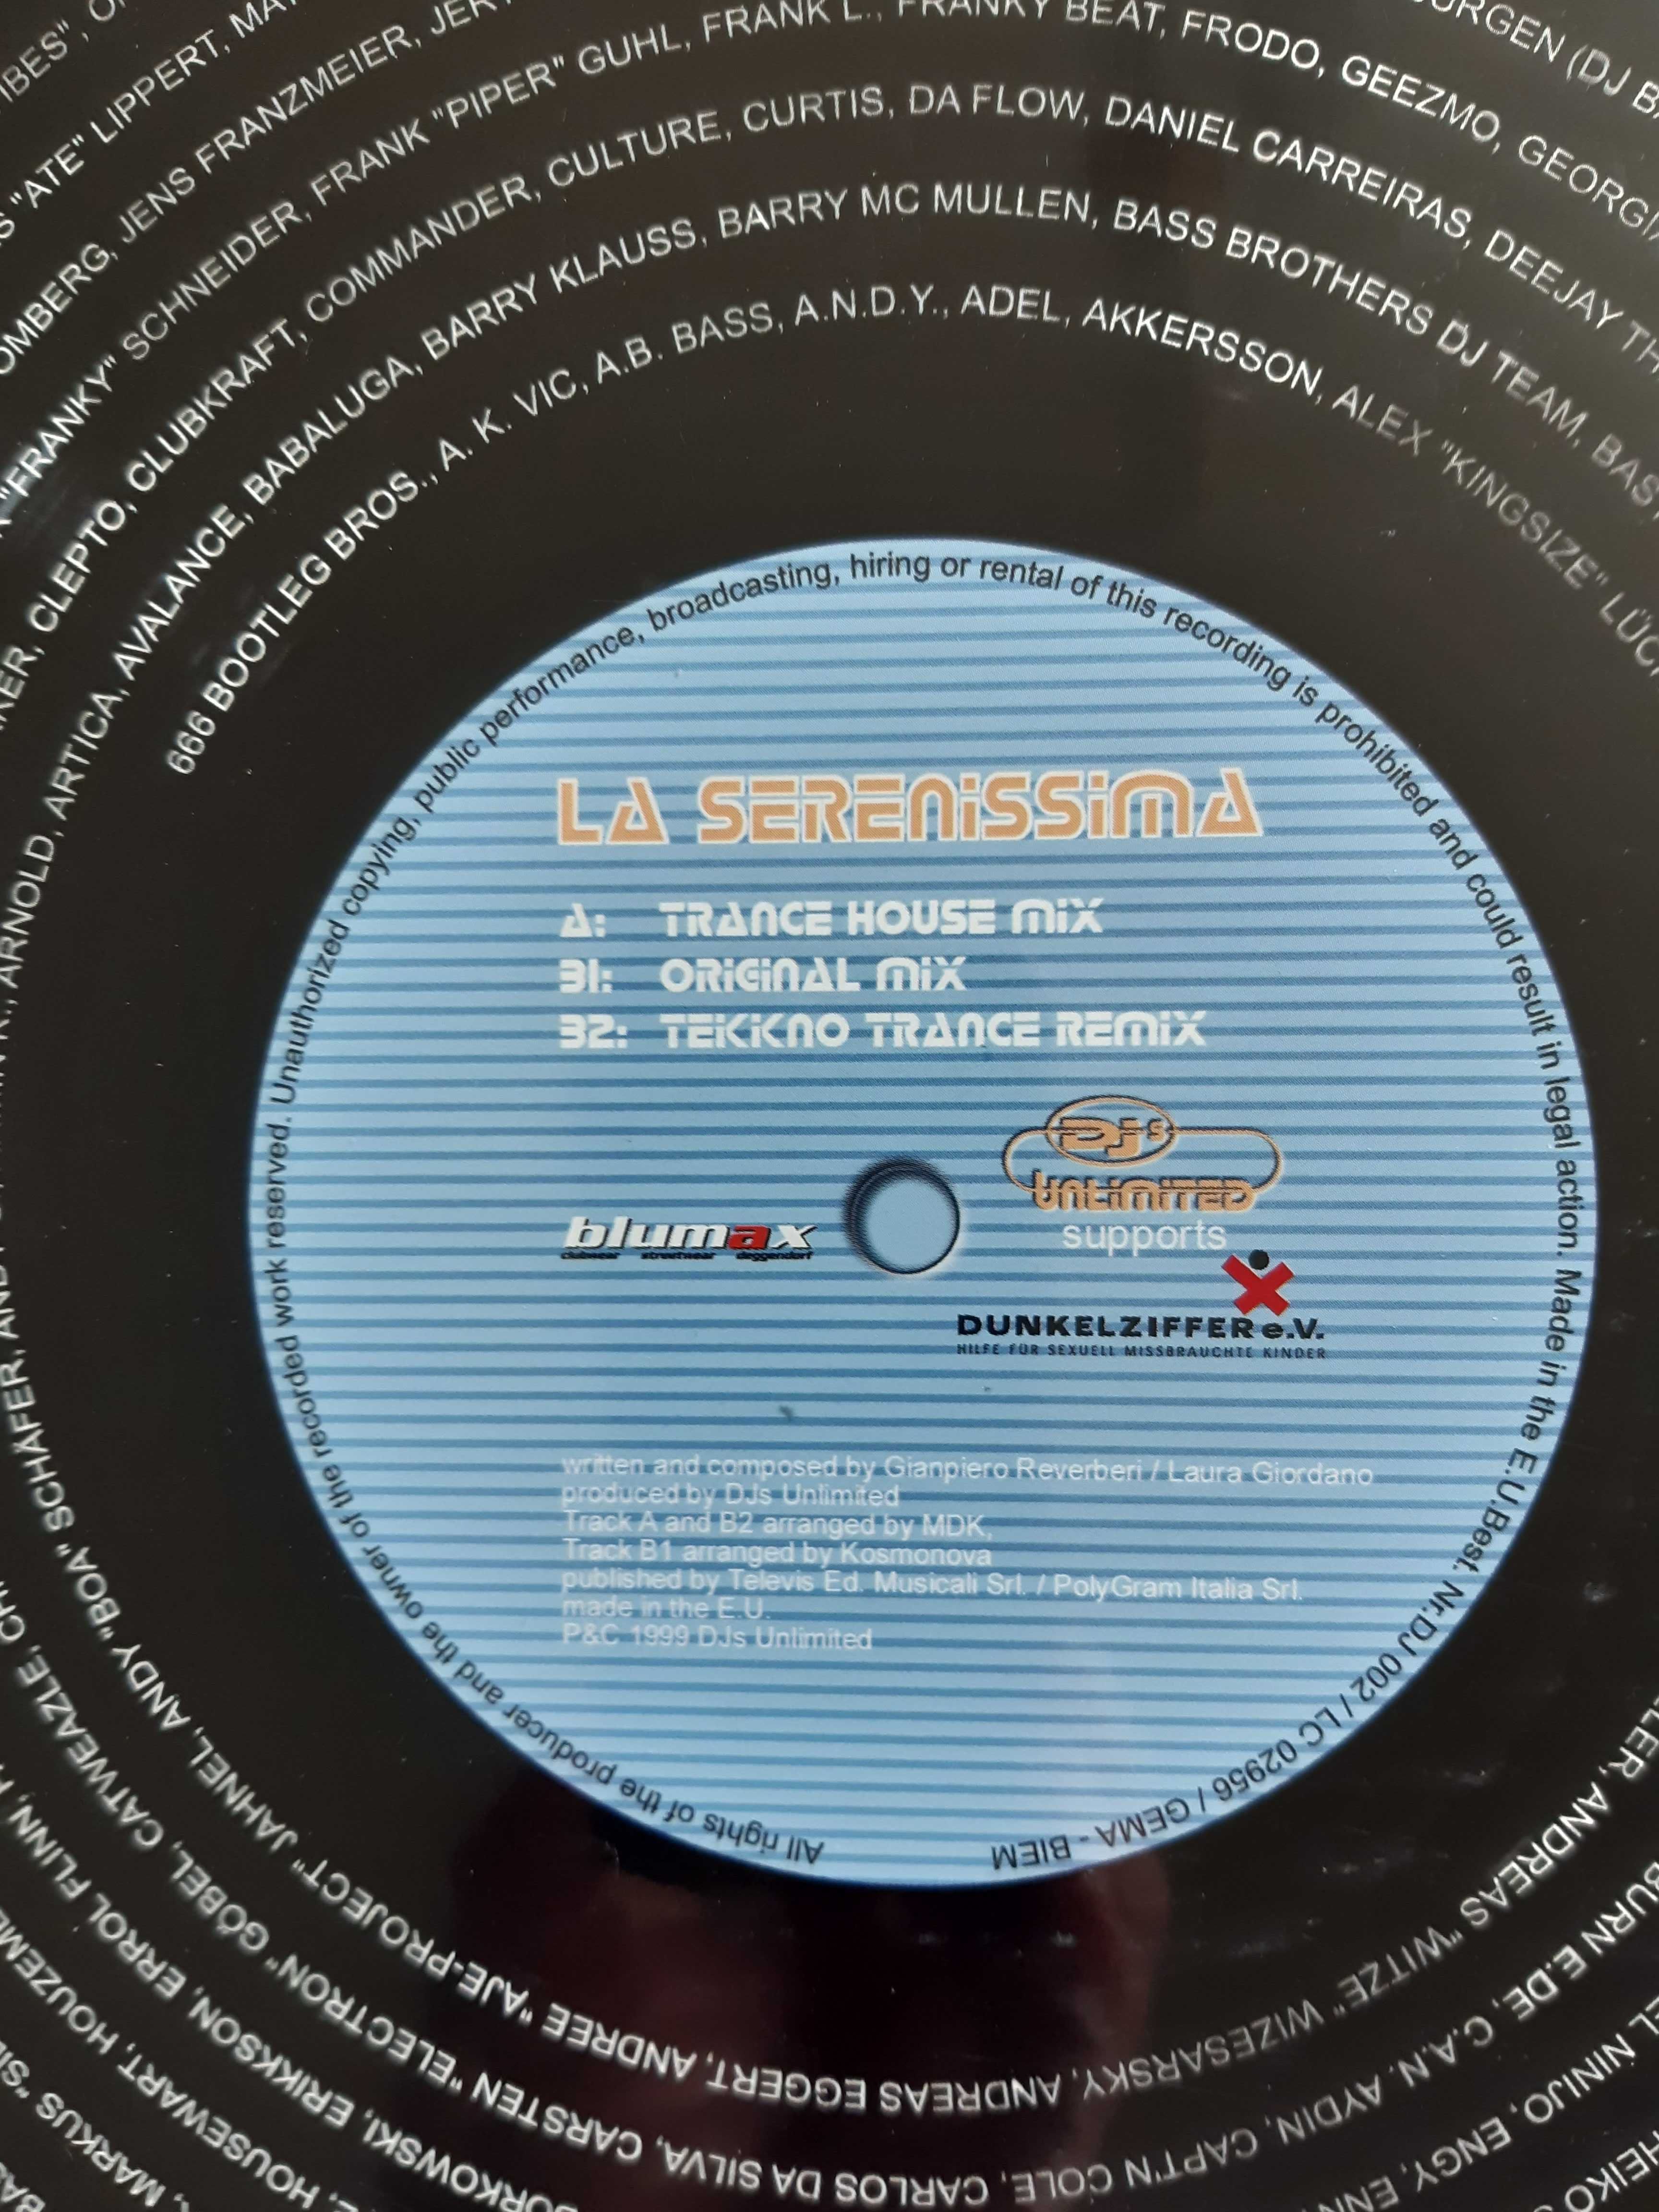 płyta winylowa maxi DJs Unlimited – La Serenissima hard trance